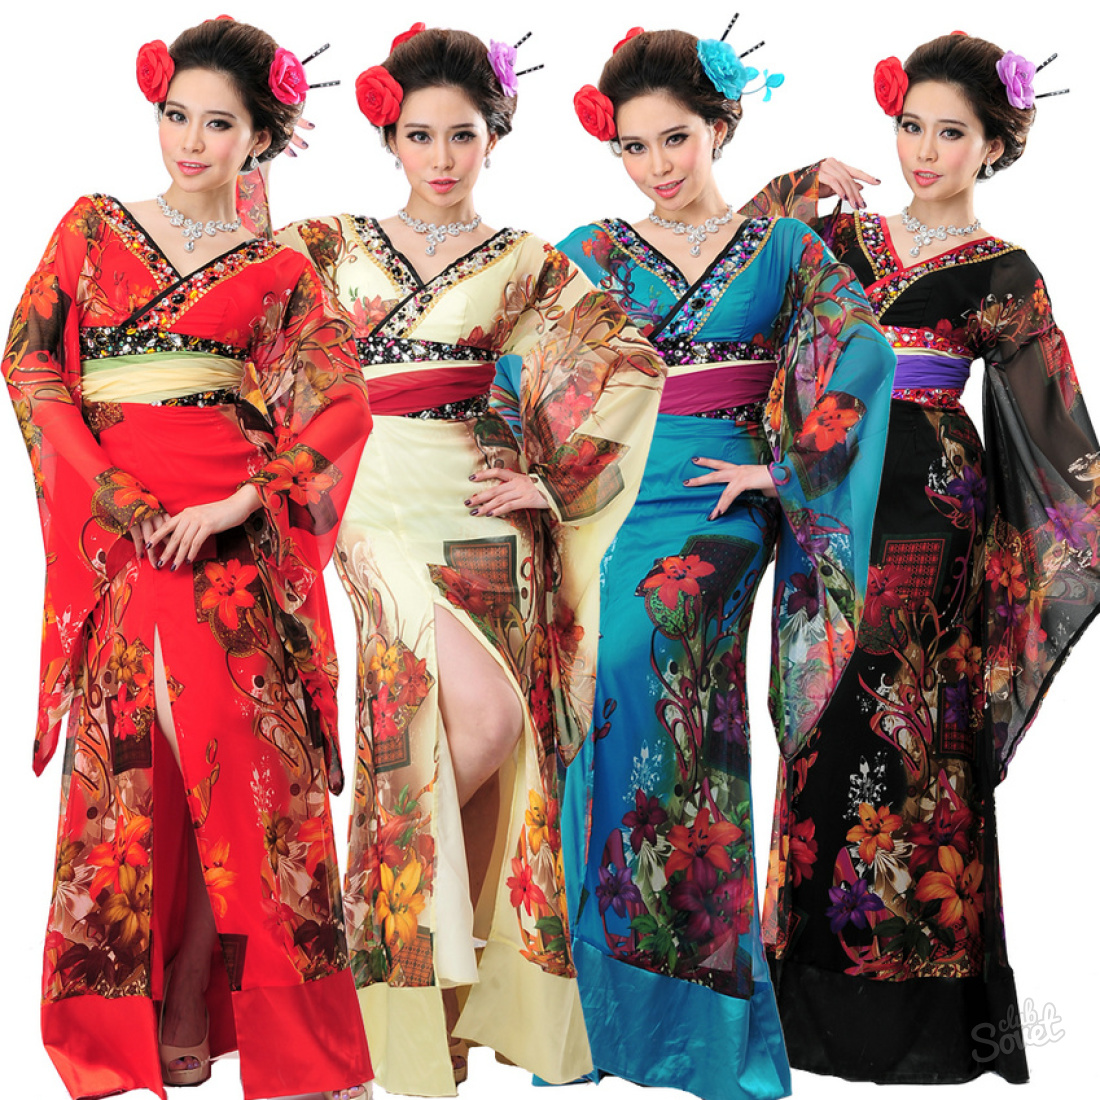 How to sew kimono